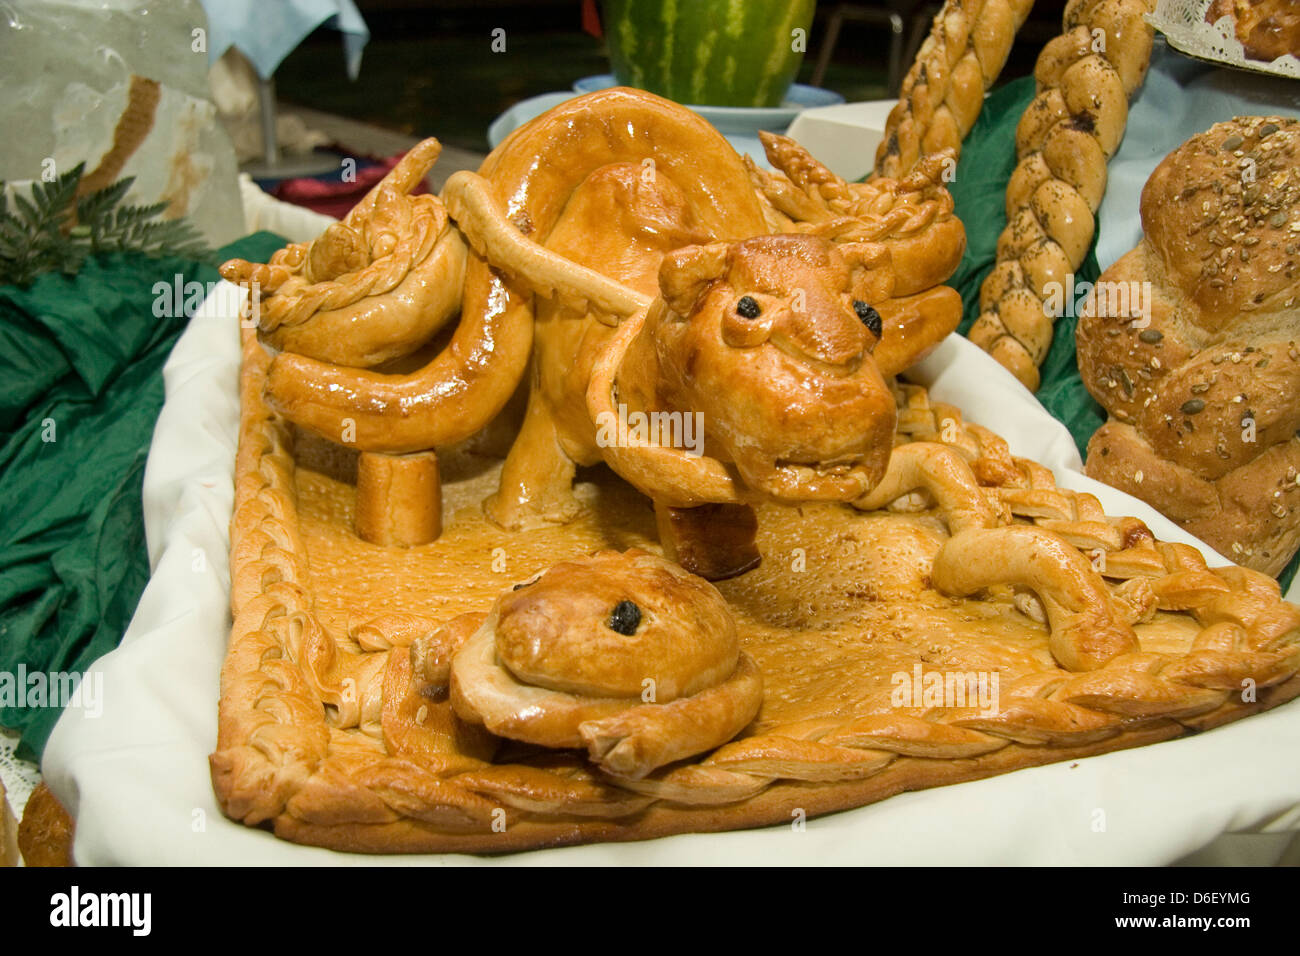 Pâtisserie en forme de Bull sur le minuit buffet de desserts d'un navire de croisière Banque D'Images